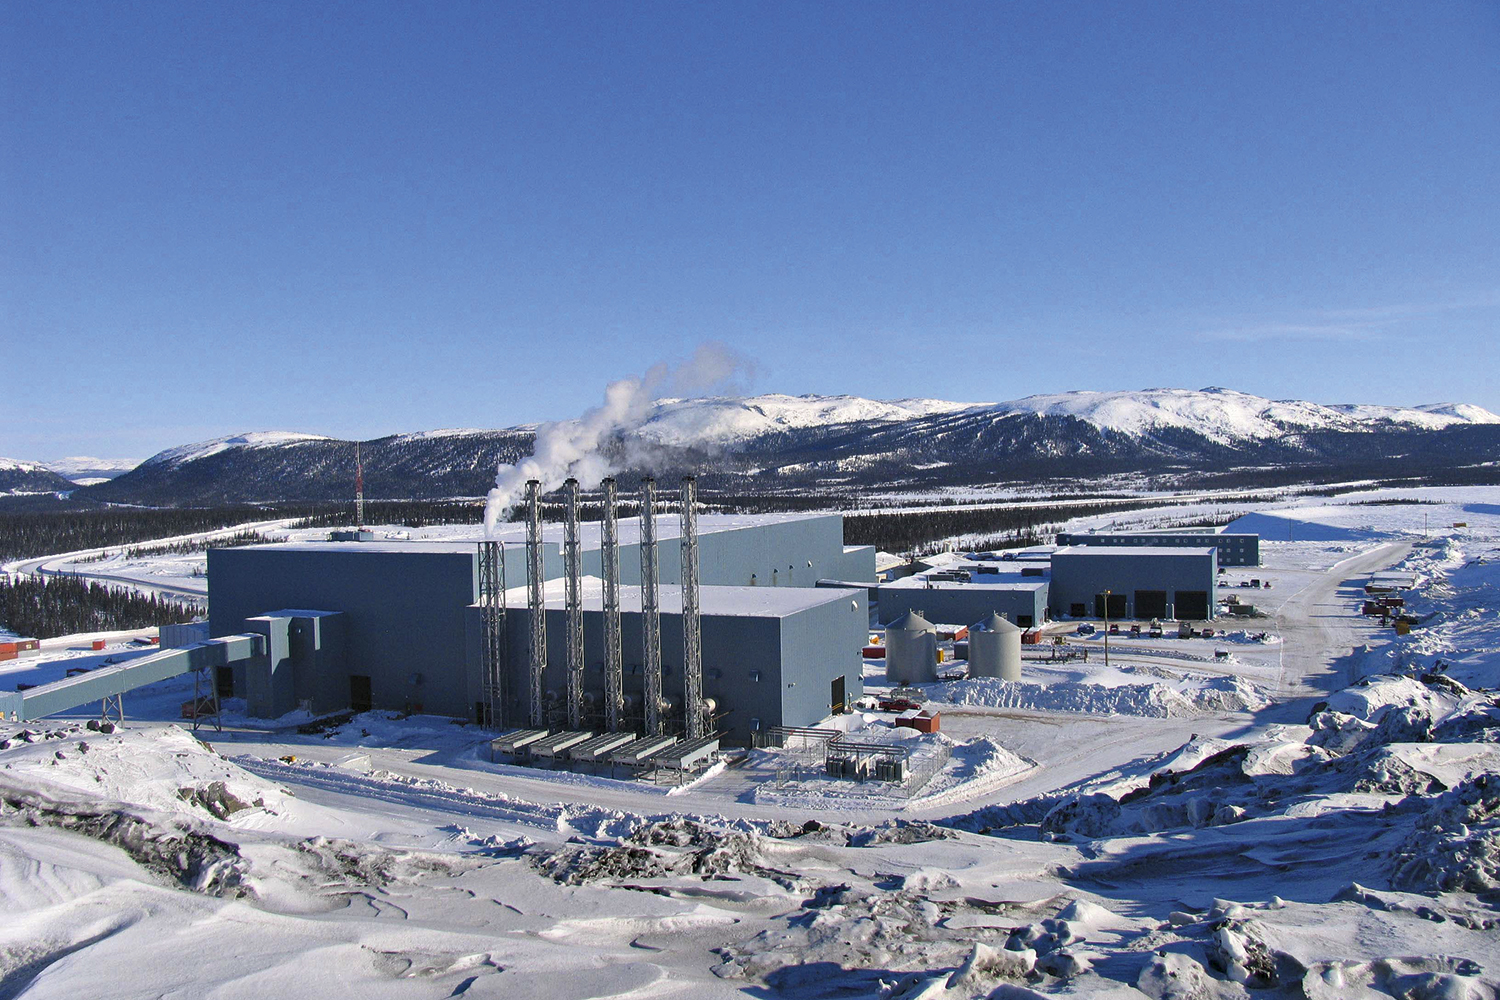 RIQUEZA MINERAL - Unidade da Vale no Canadá: níquel e cobalto extraídos em minas estrangeiras -